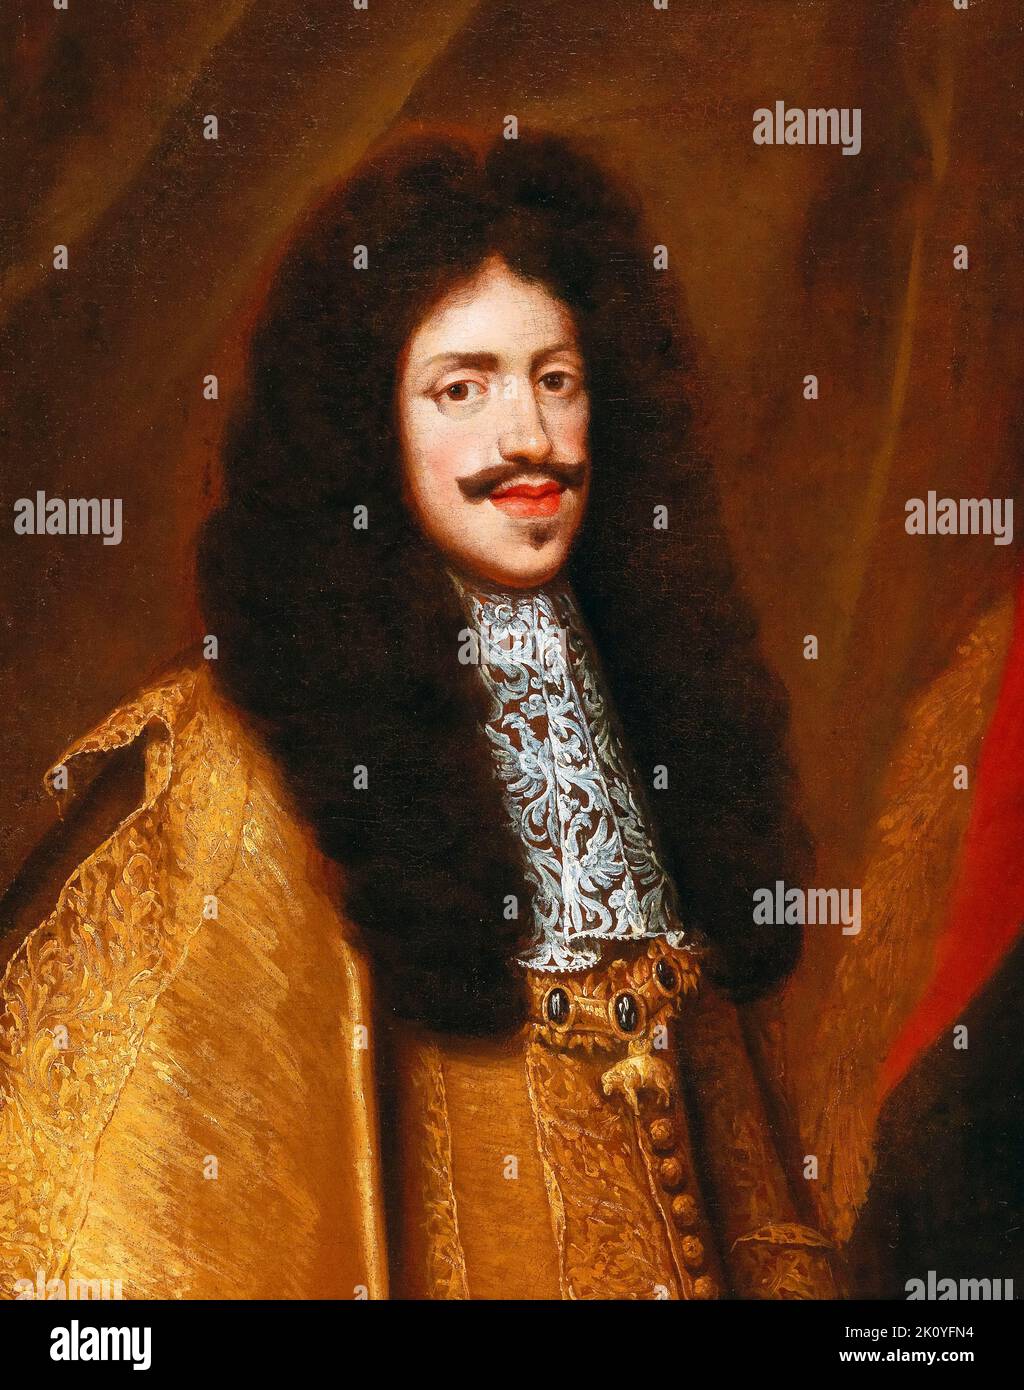 Leopoldo i (1640-1705), imperatore del Sacro Romano Impero (1658-1705), che indossa l'ordine del vello d'oro, ritratto dipinto ad olio di Benjamin Block, prima del 1690 Foto Stock